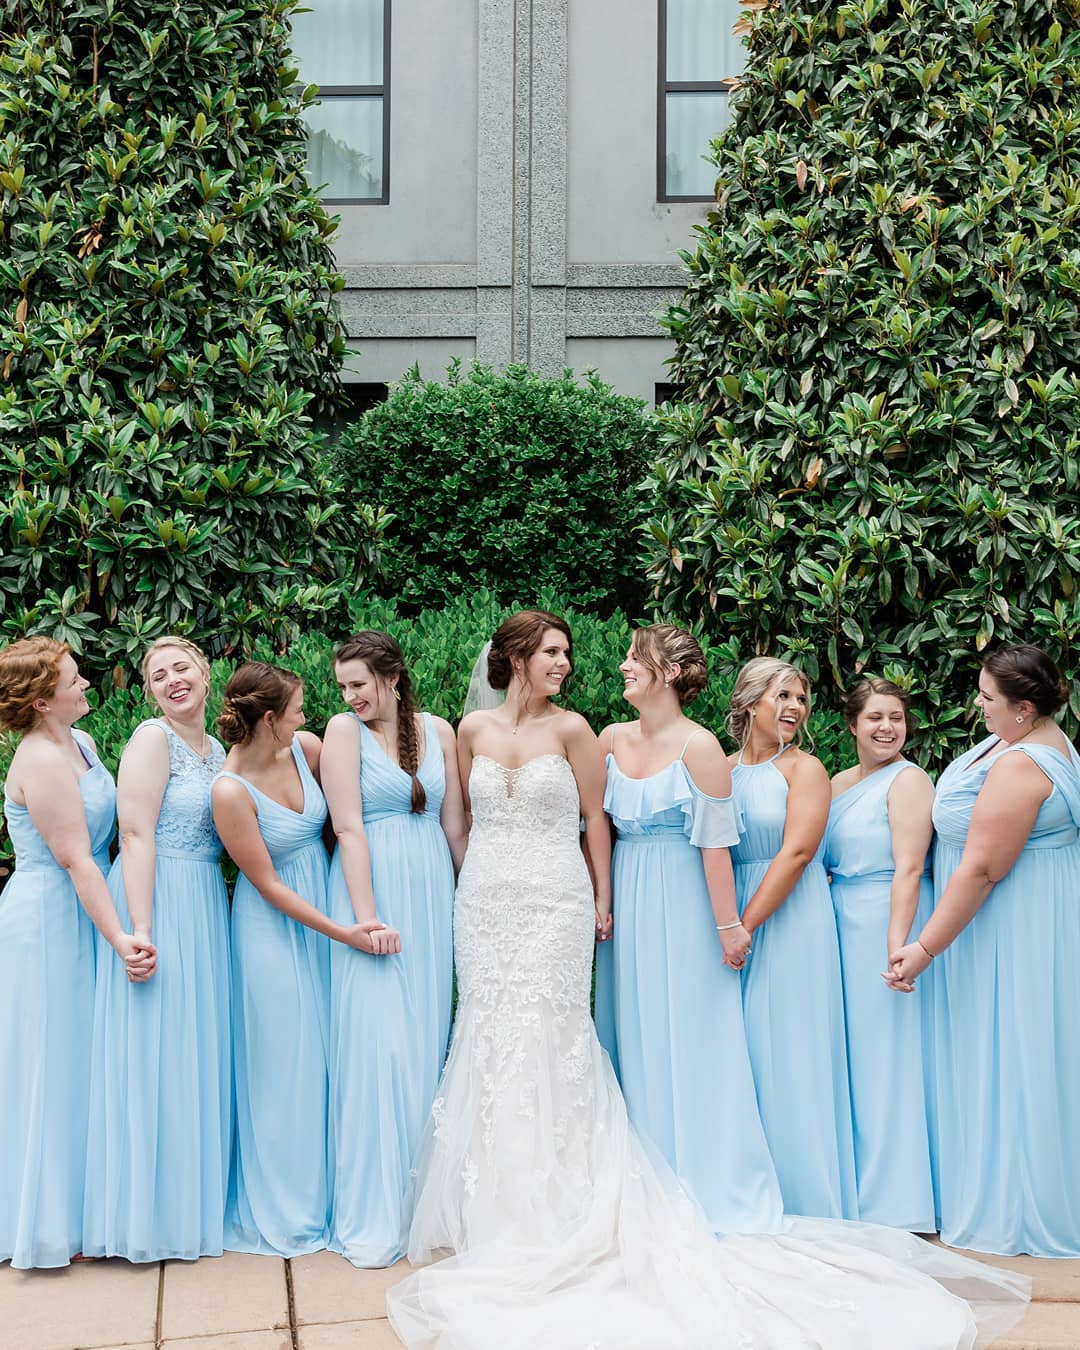 match #IceBlue bridesmaids! Explore ...